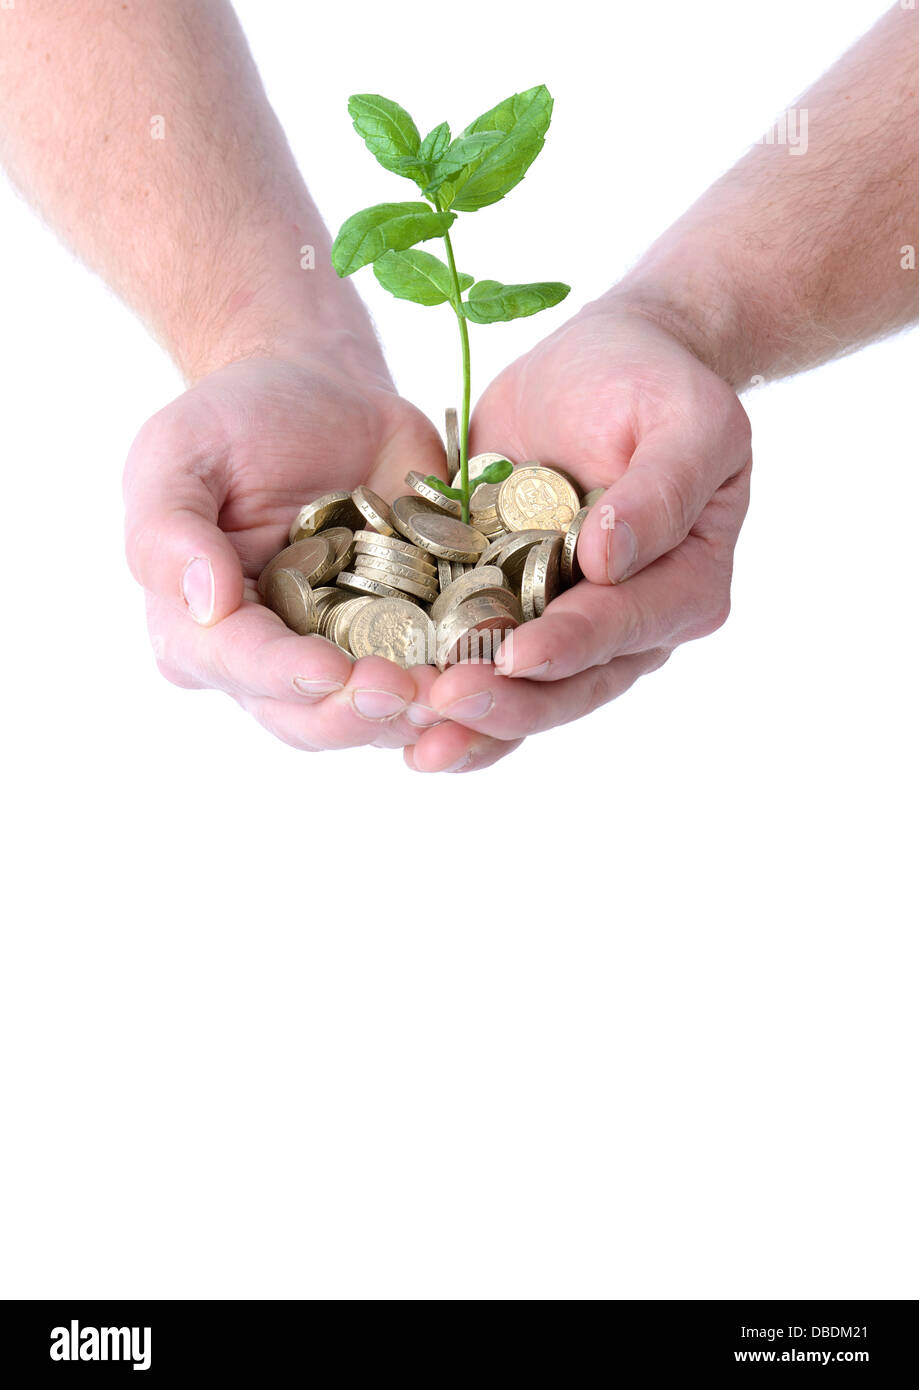 Mains tenant un tas de pièces de monnaie avec une plante poussant hors d'eux, concept de l'expansion monétaire, isolé sur fond blanc Banque D'Images